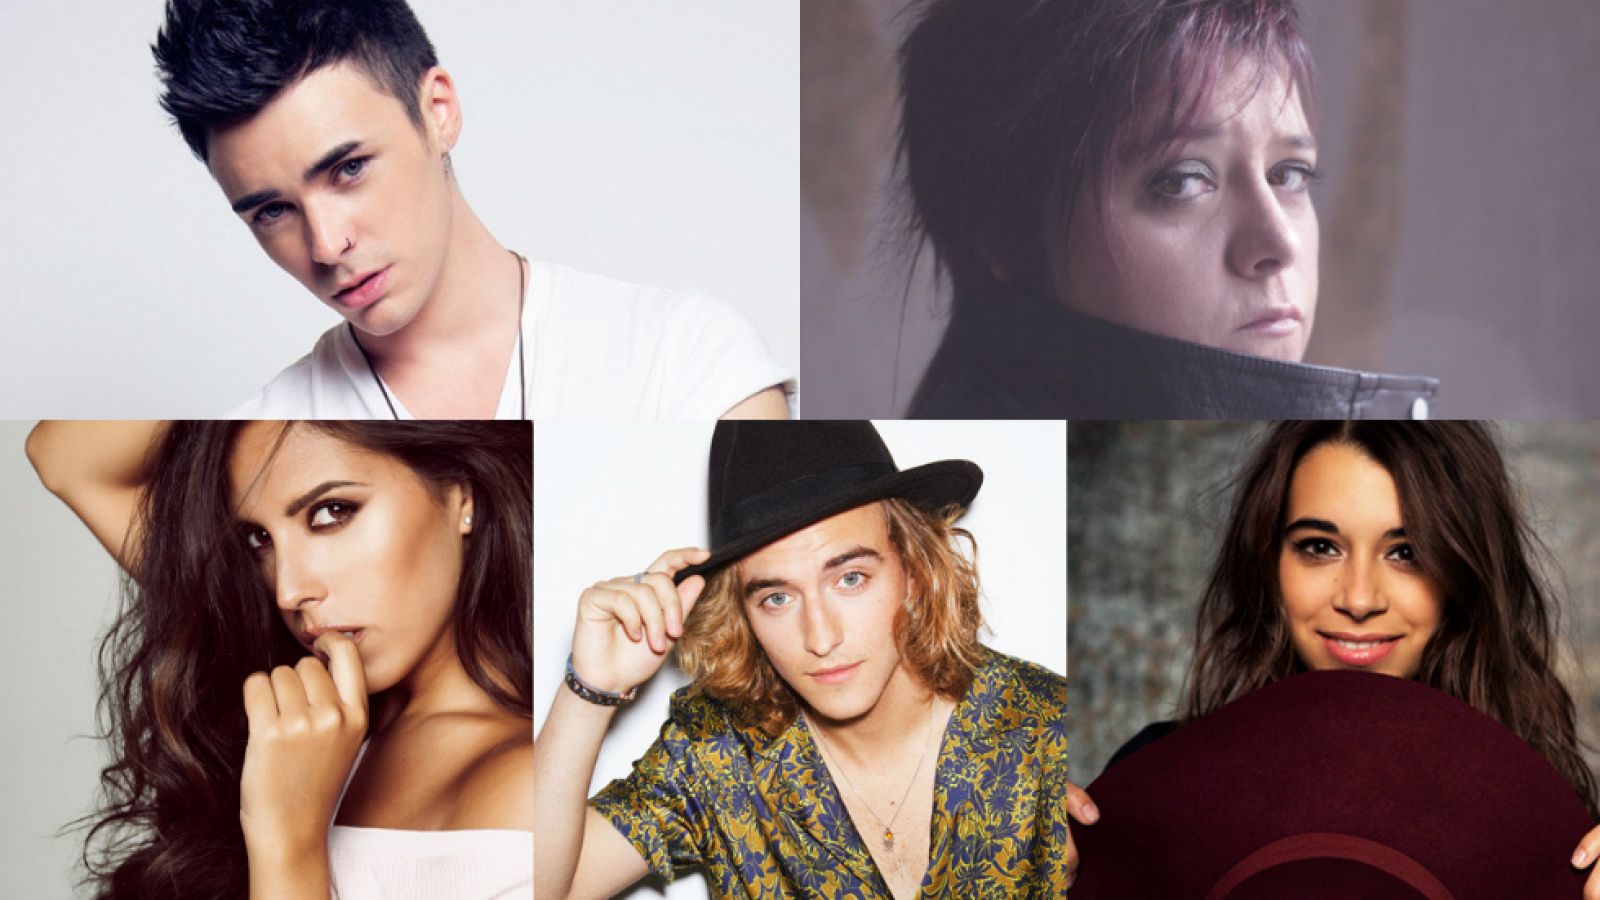 Los cinco candidatos de Objetivo Eurovisión